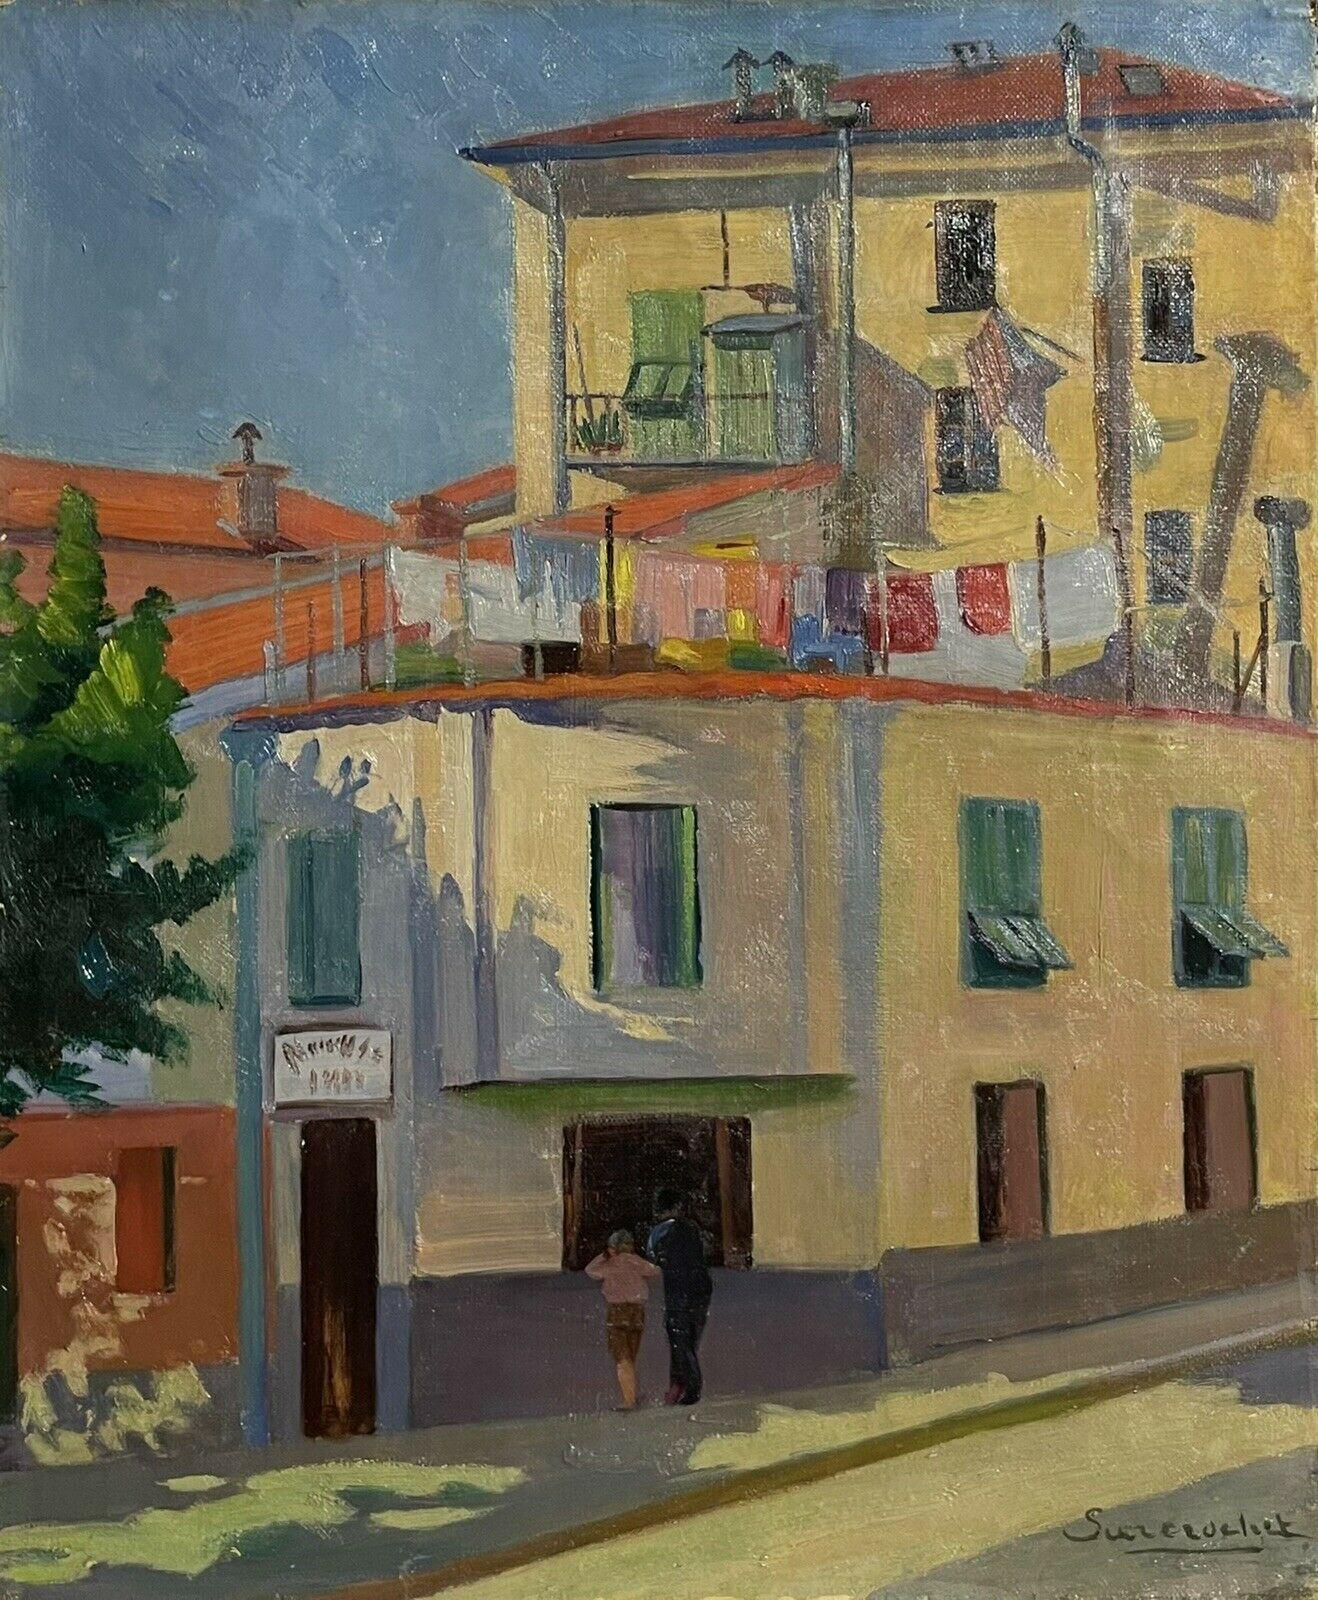 Unknown Landscape Painting – Französische modernistische Ölfiguren aus den 1950er Jahren in der Sunny Street und Gebäuden, signiert